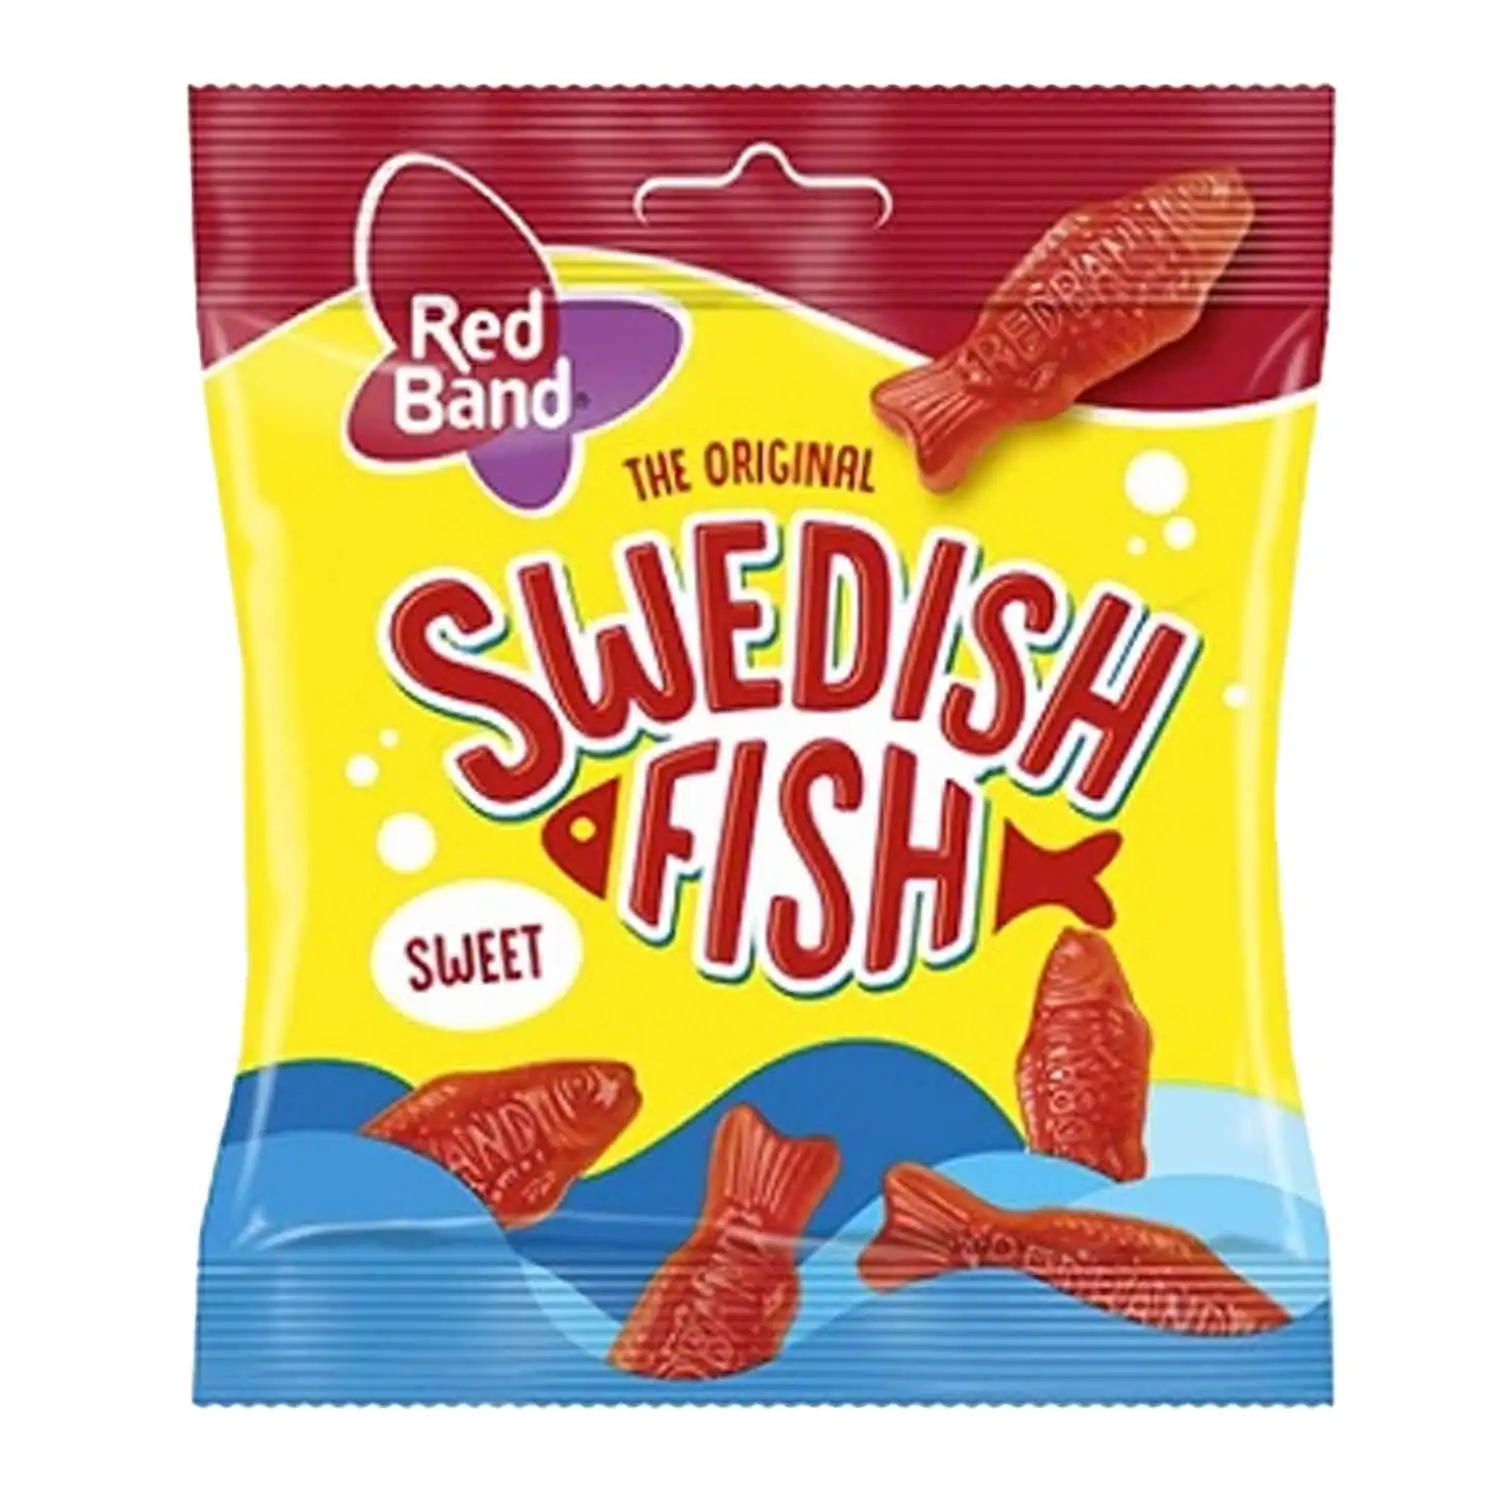 Red Band swedish fish 100g - Buy at Real Tobacco